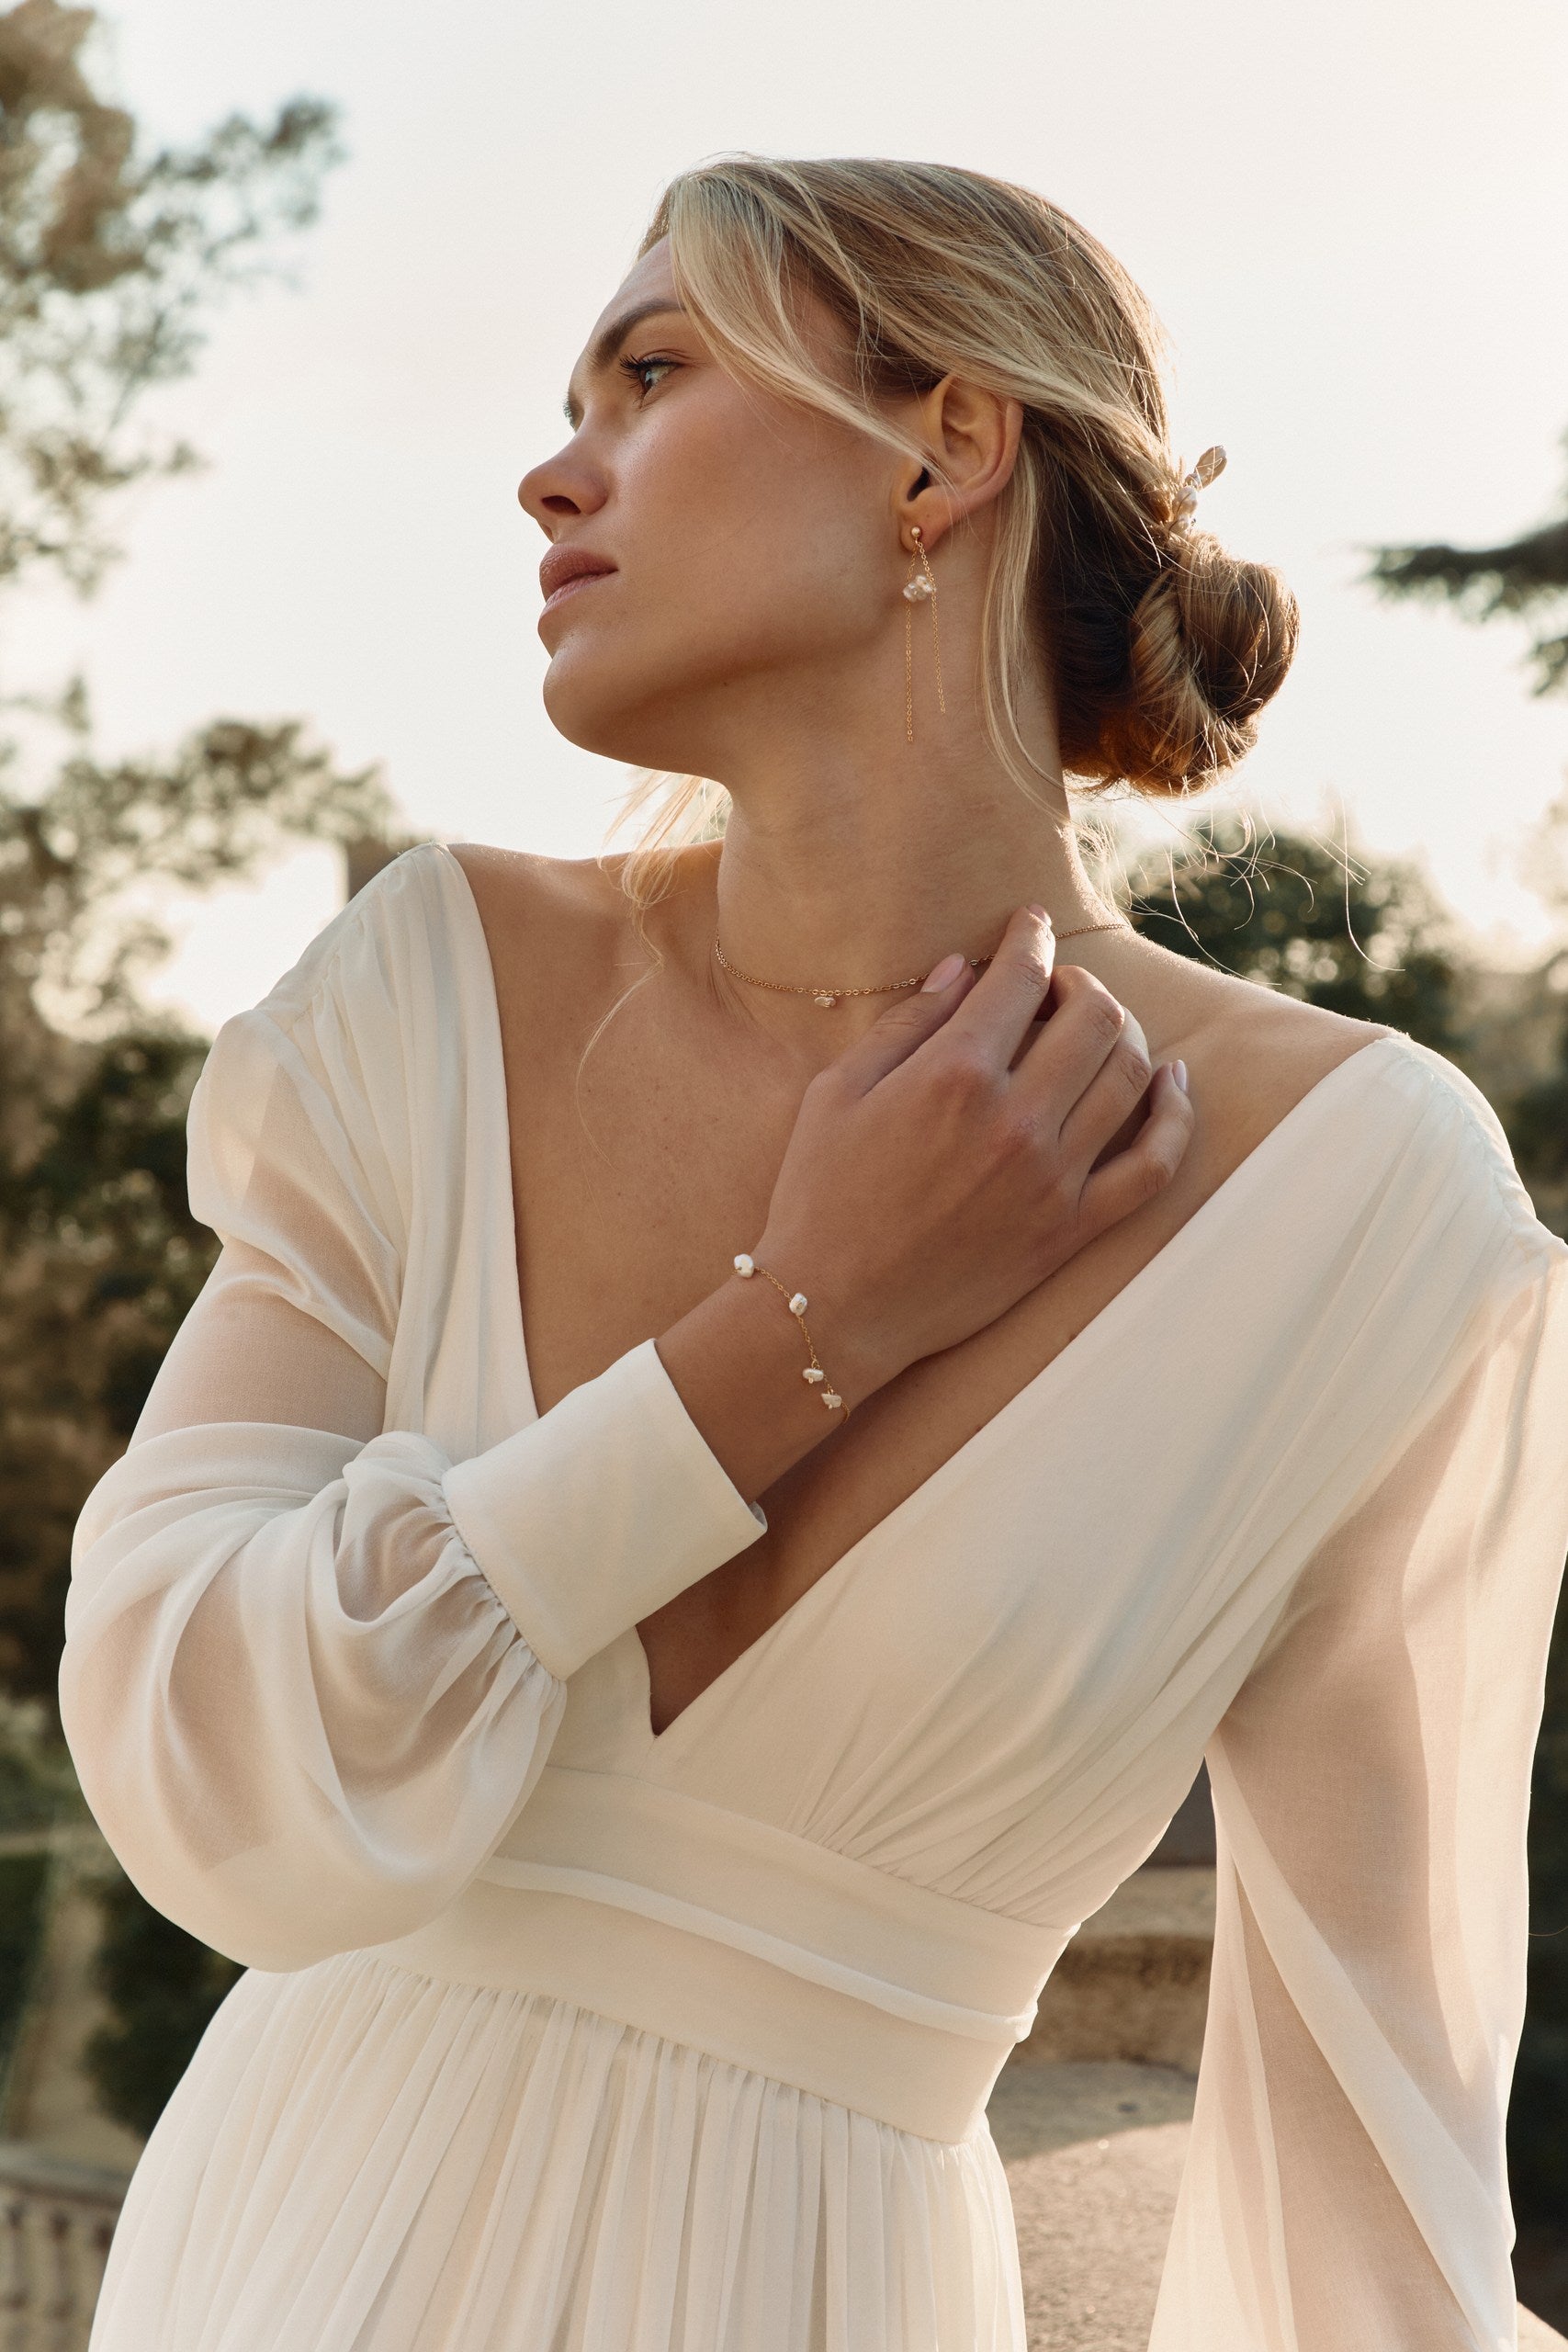 Femme avec une robe de mariée se touchant le coup avec sa main montrant son bracelet à perles irrégulières